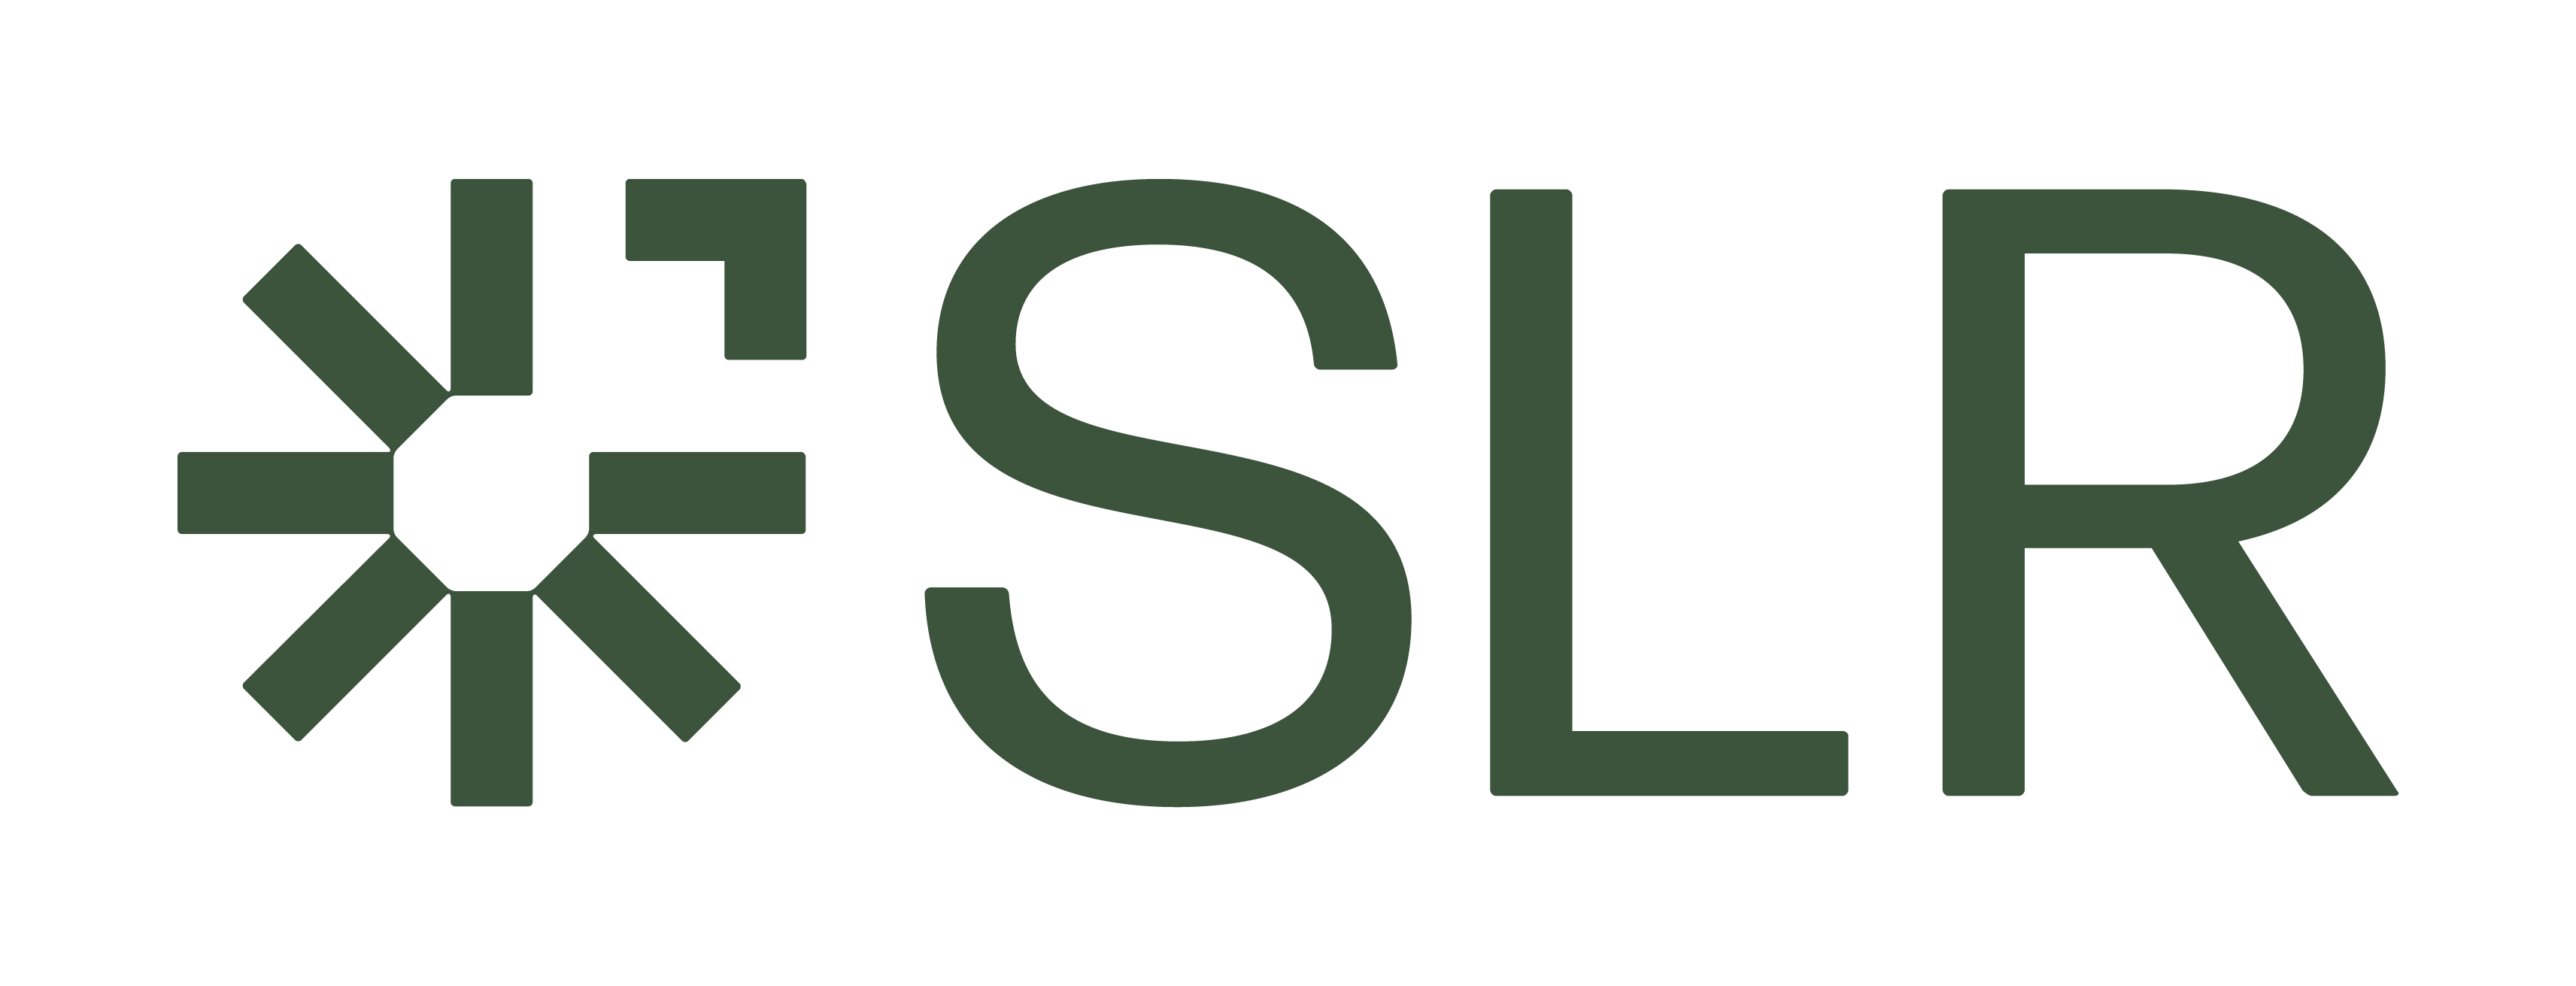 SLR Consulting Ltd Logo